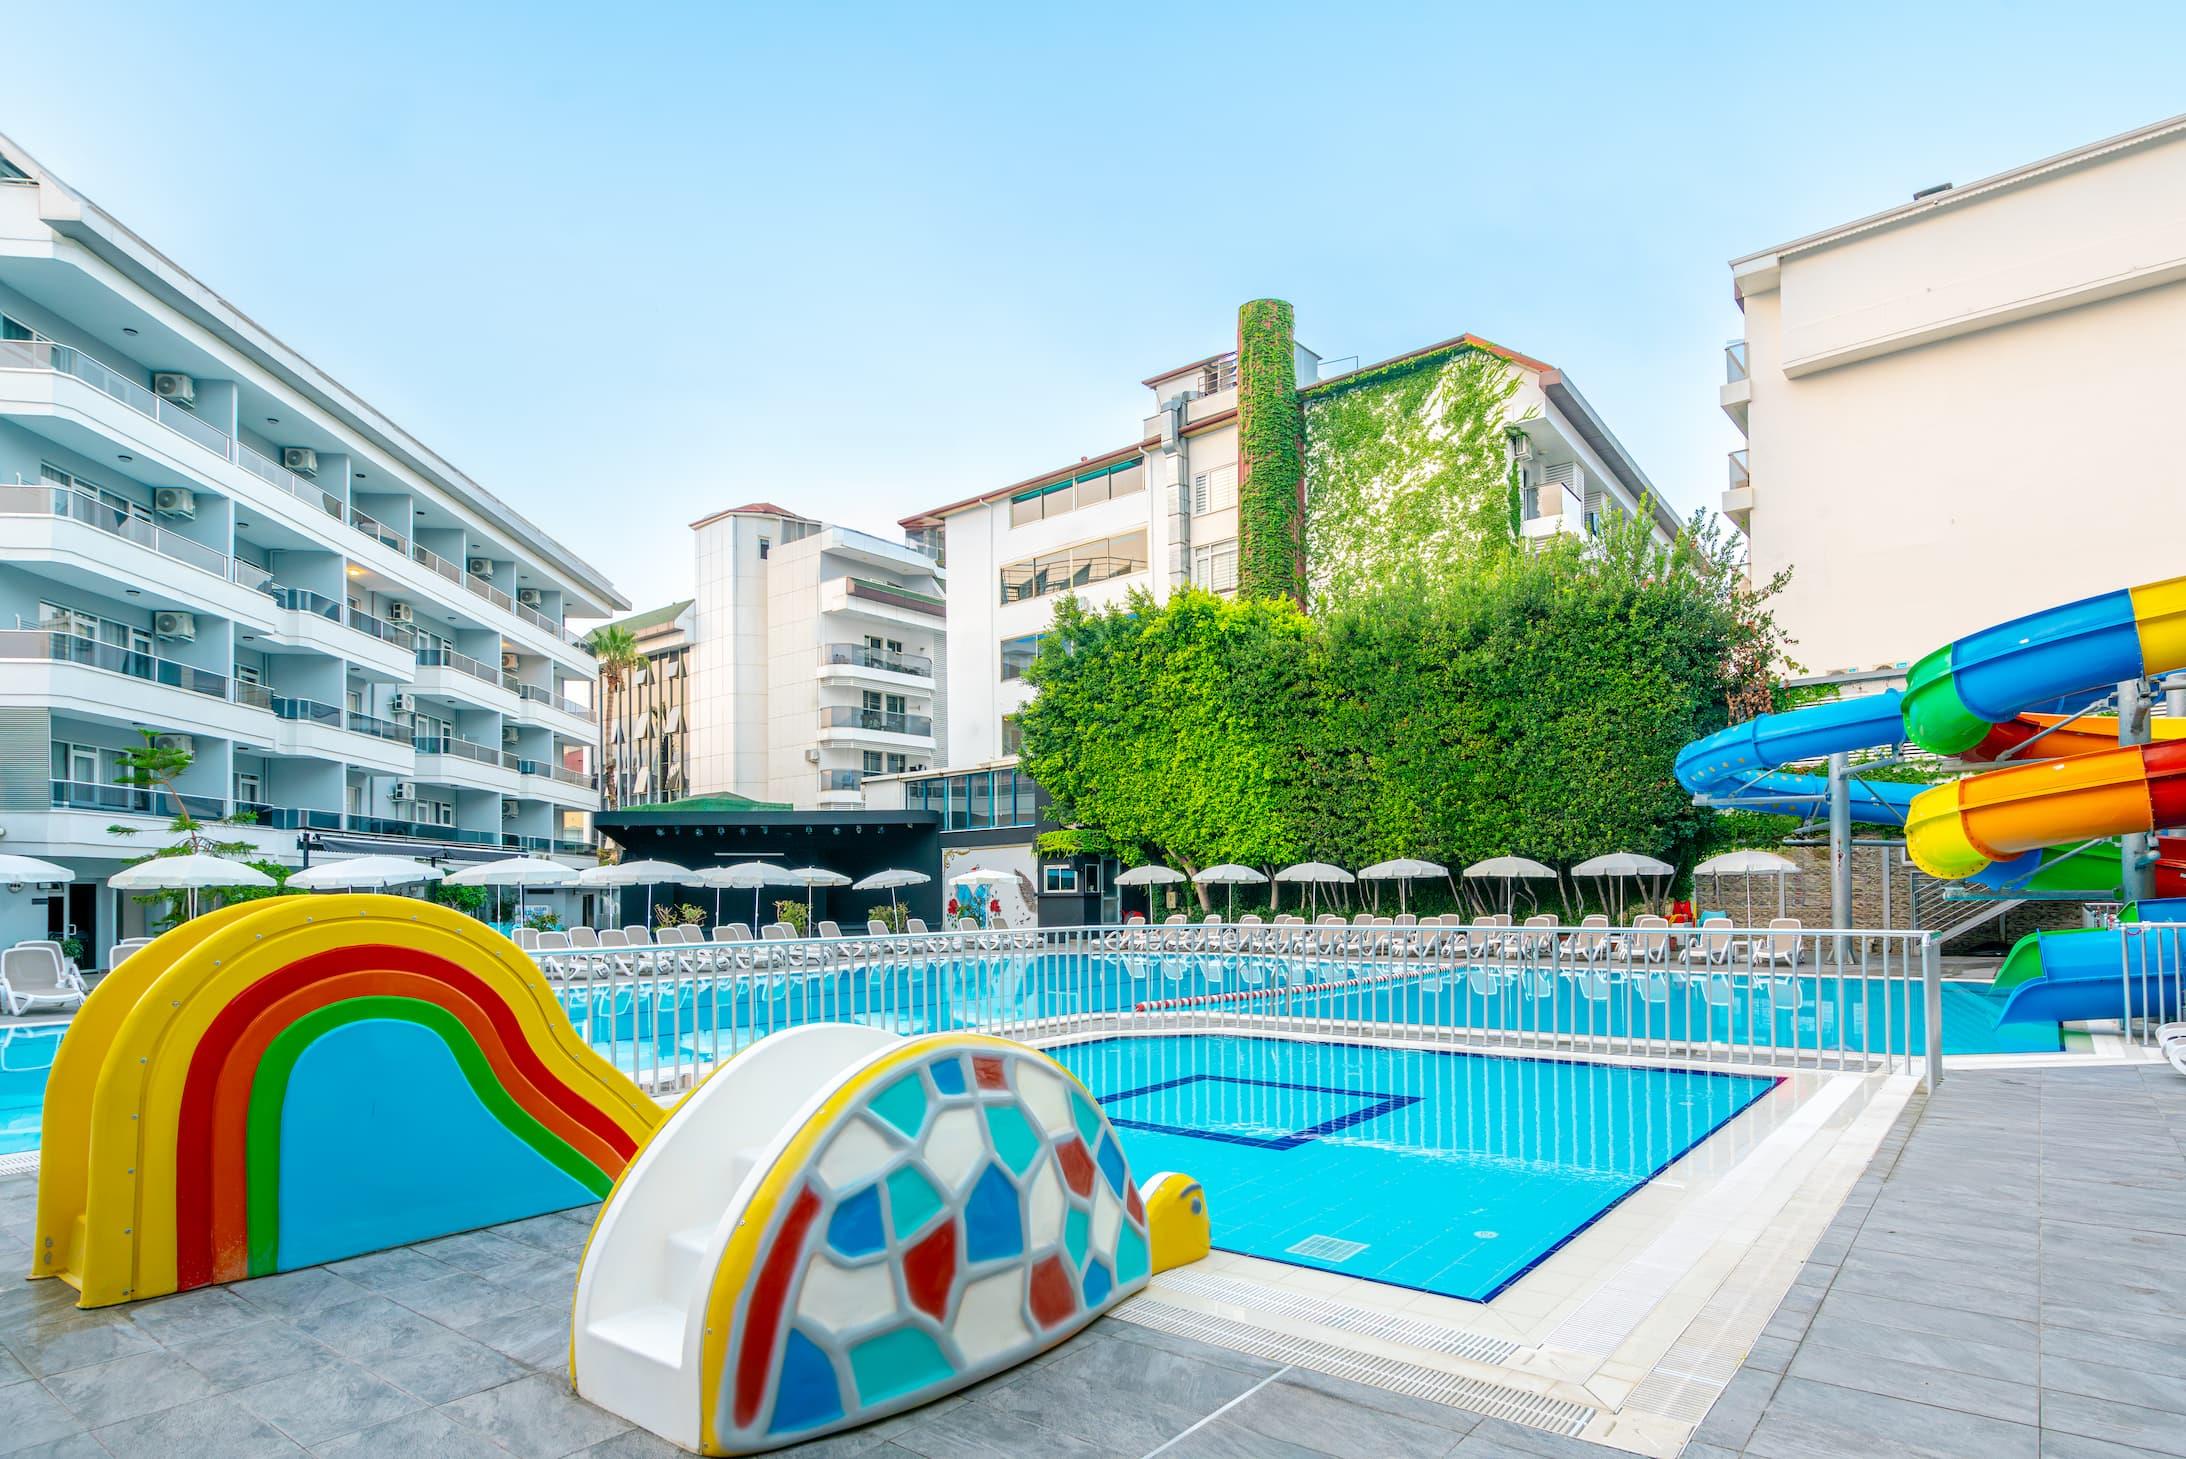 Avena Resort & Spa Hotel 4*